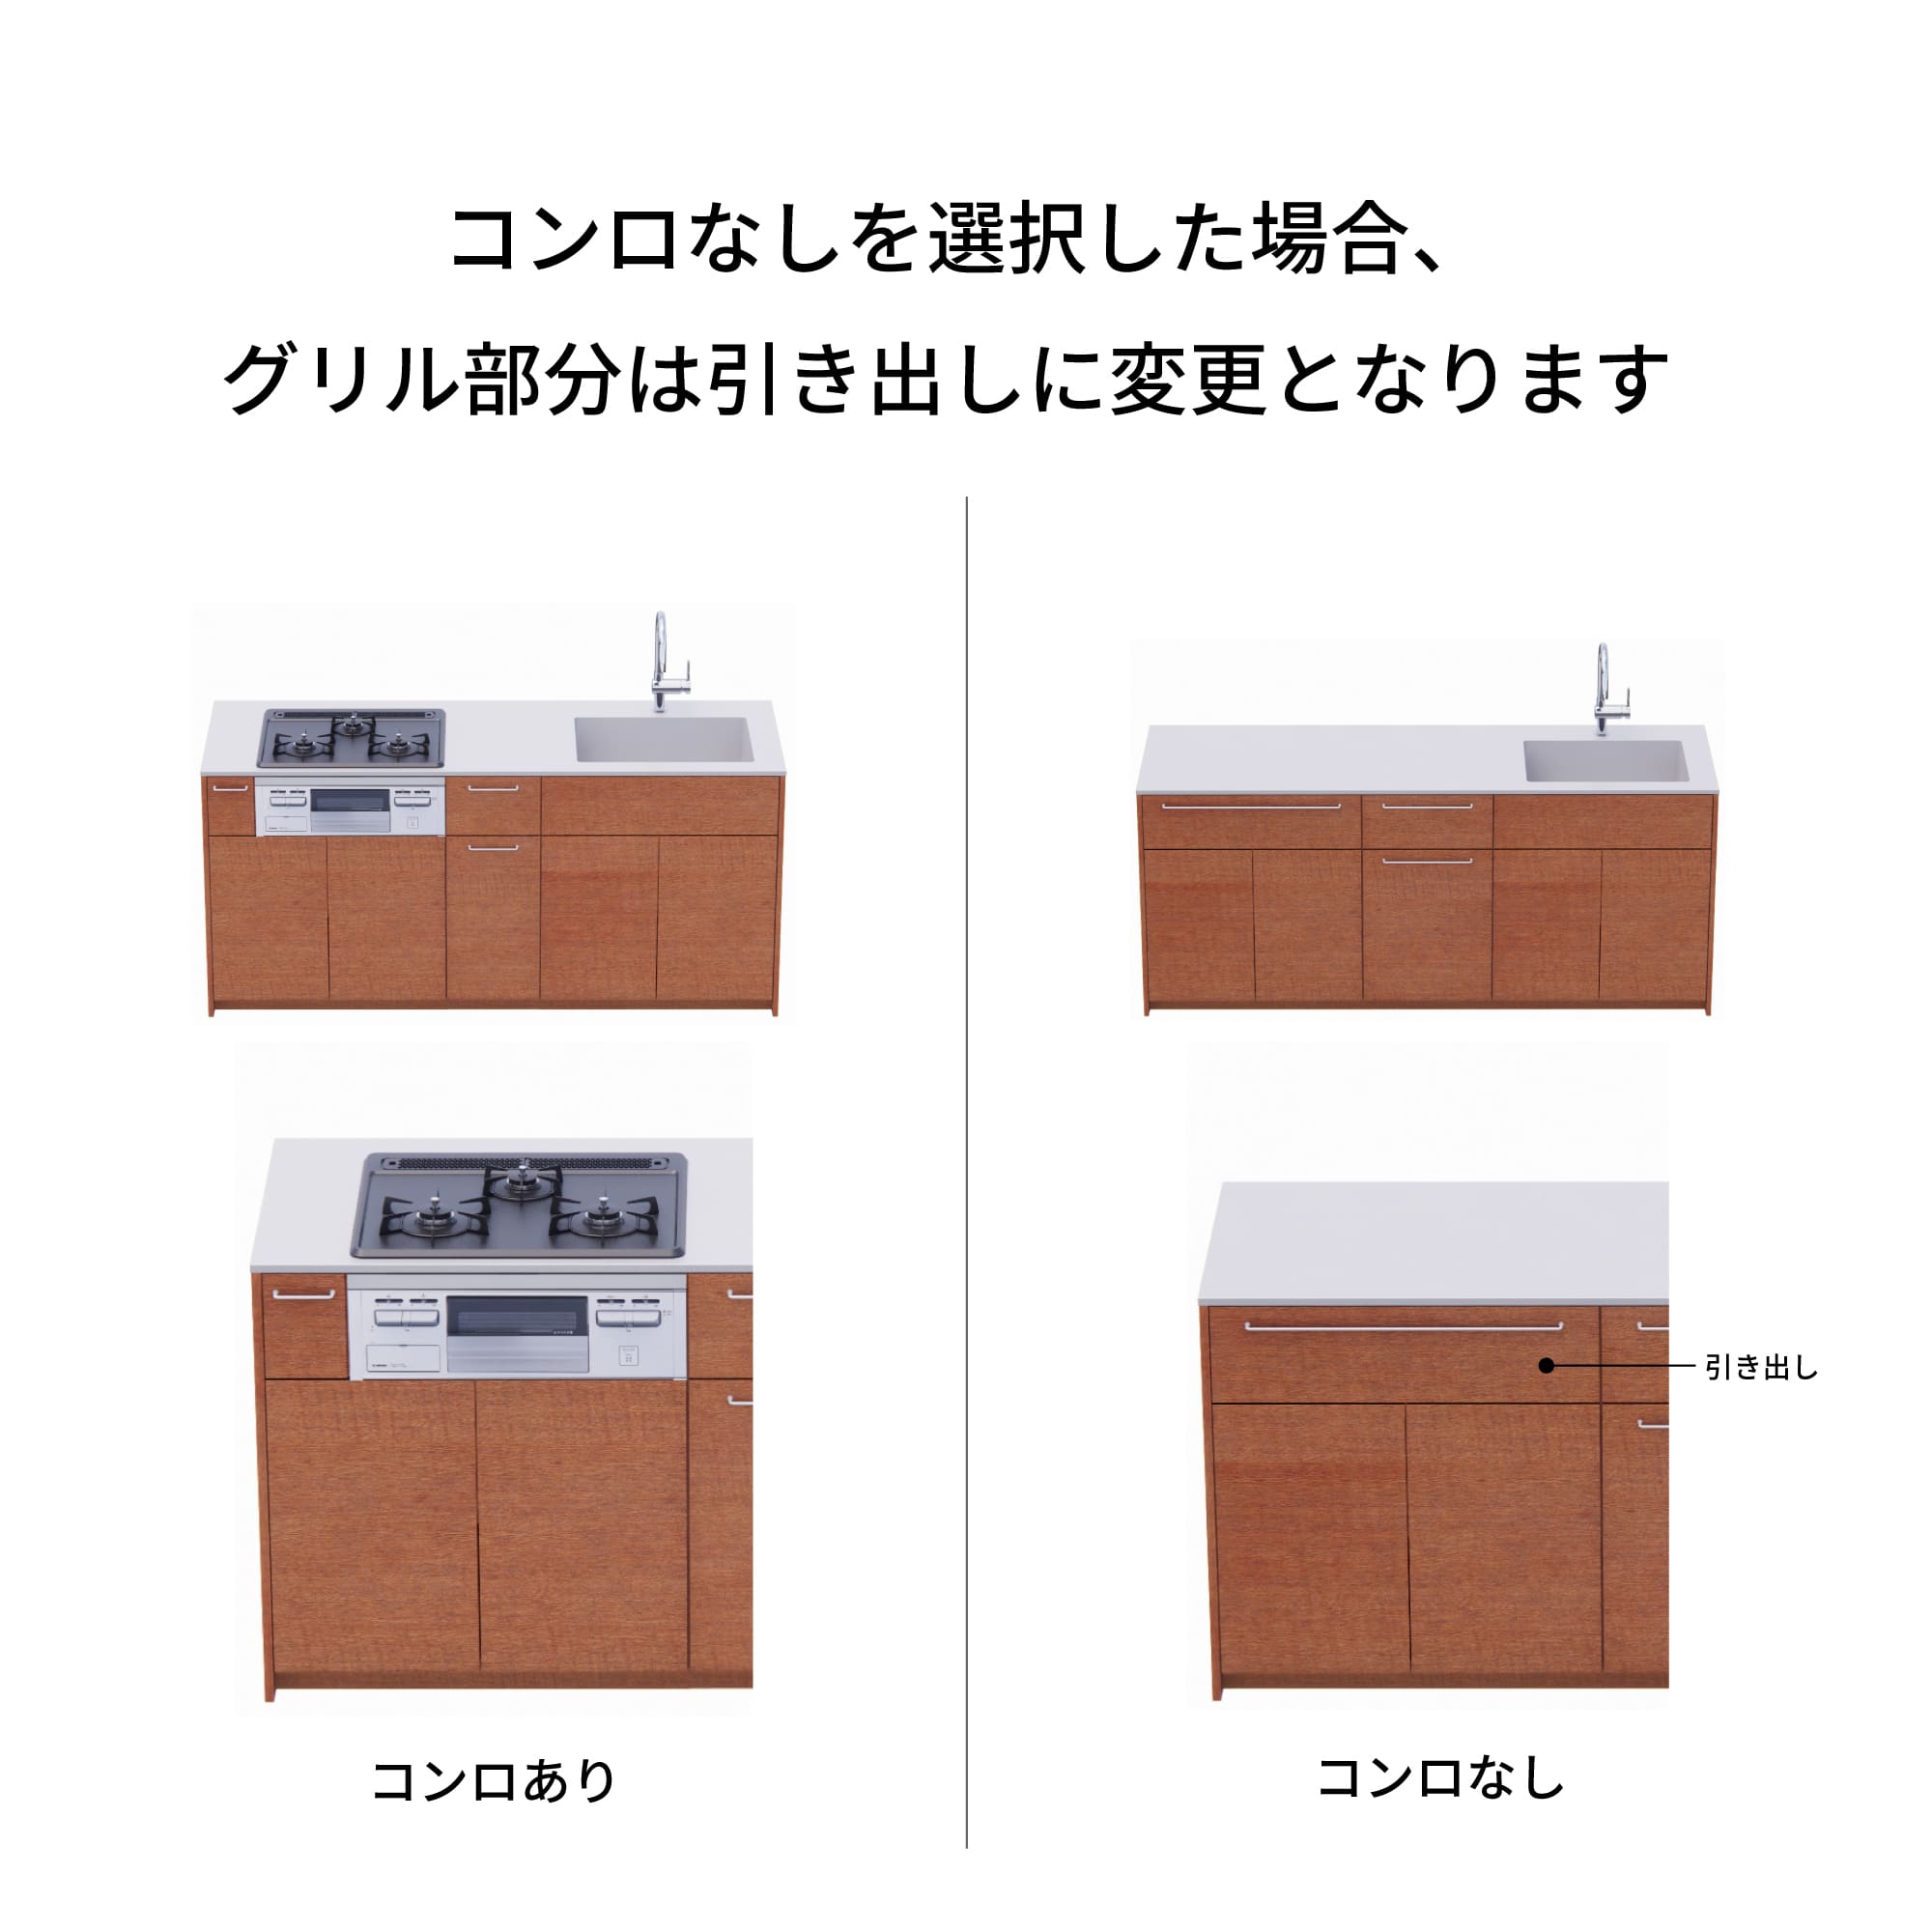 木製システムキッチン 壁付け型 W2440～2740・コンロなし / オーブンなし / 食洗機なし KB-KC022-24-G183 コンロ無しの場合、通常魚焼きグリルがある部分は引き出しになっています